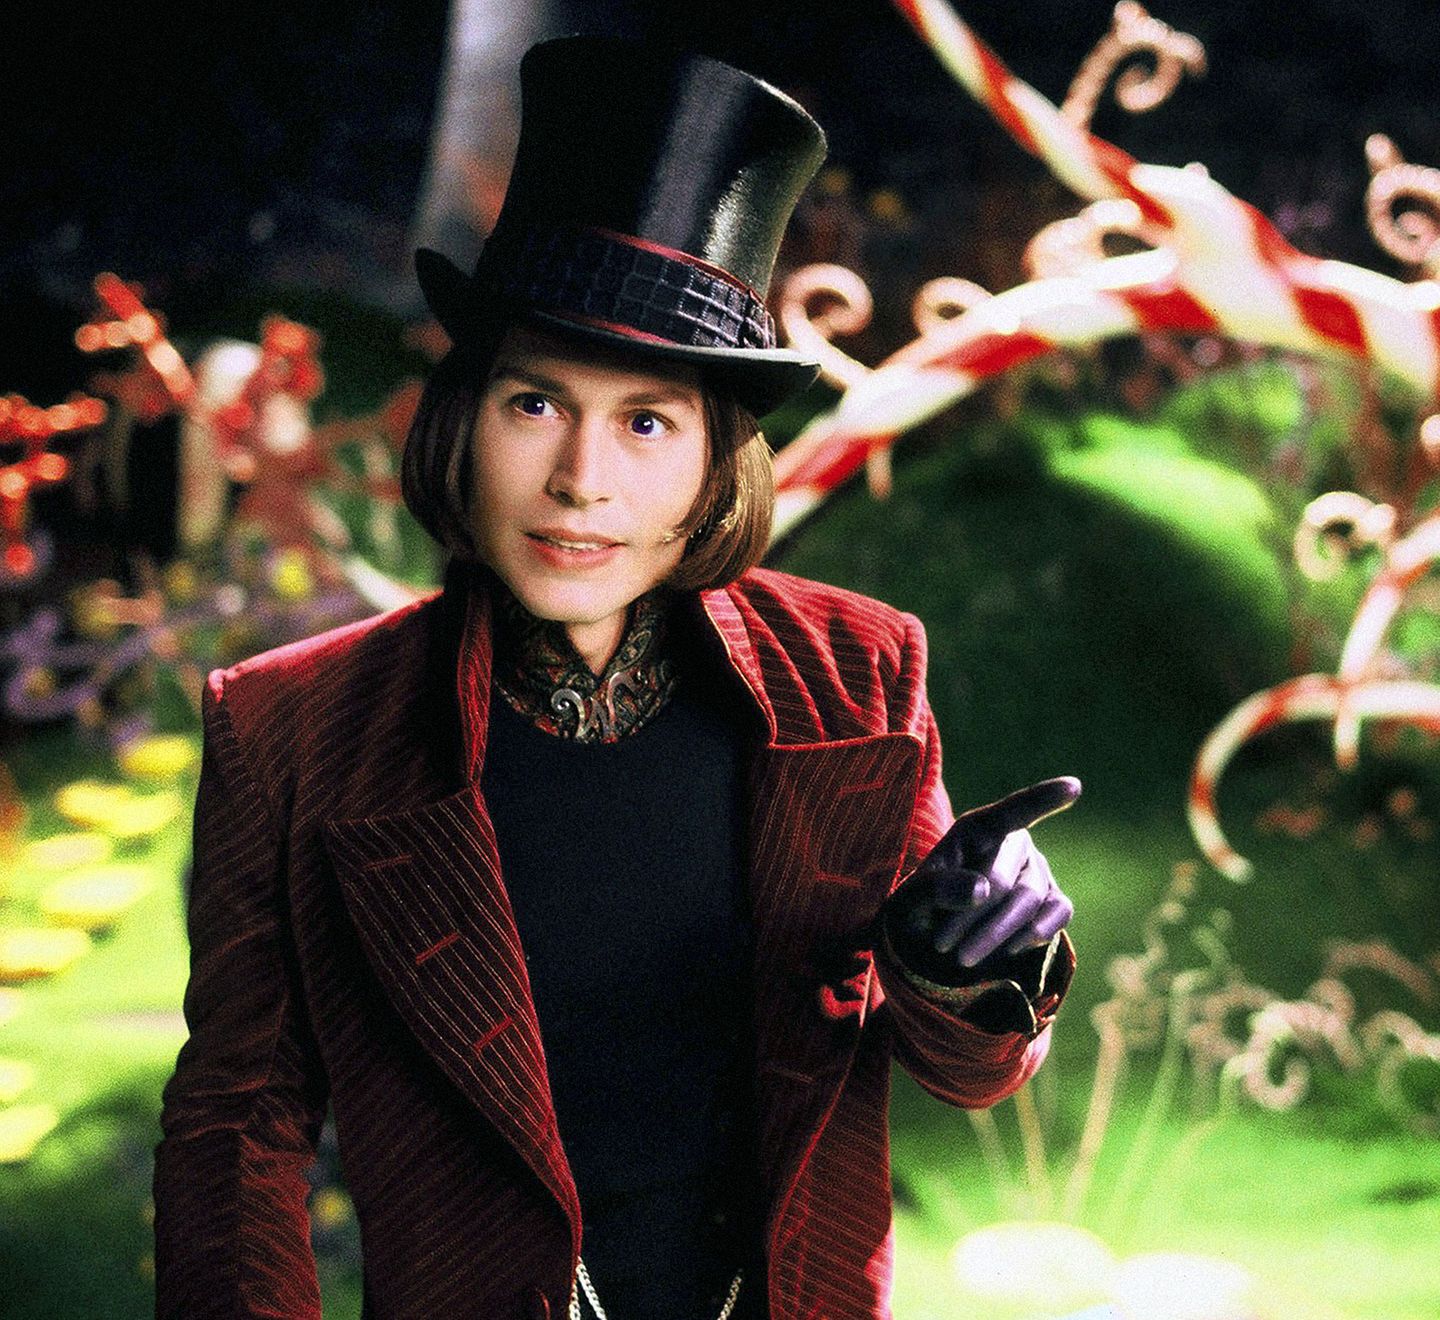 Als exzentrischer Fabrikbesitzer "Willy Wonka" in "Charlie und die Schokoladenfabrik" (2005) spielte sich Johnny auch aufgrund seiner schrägen Kostüme in die Herzen vieler Kinder.